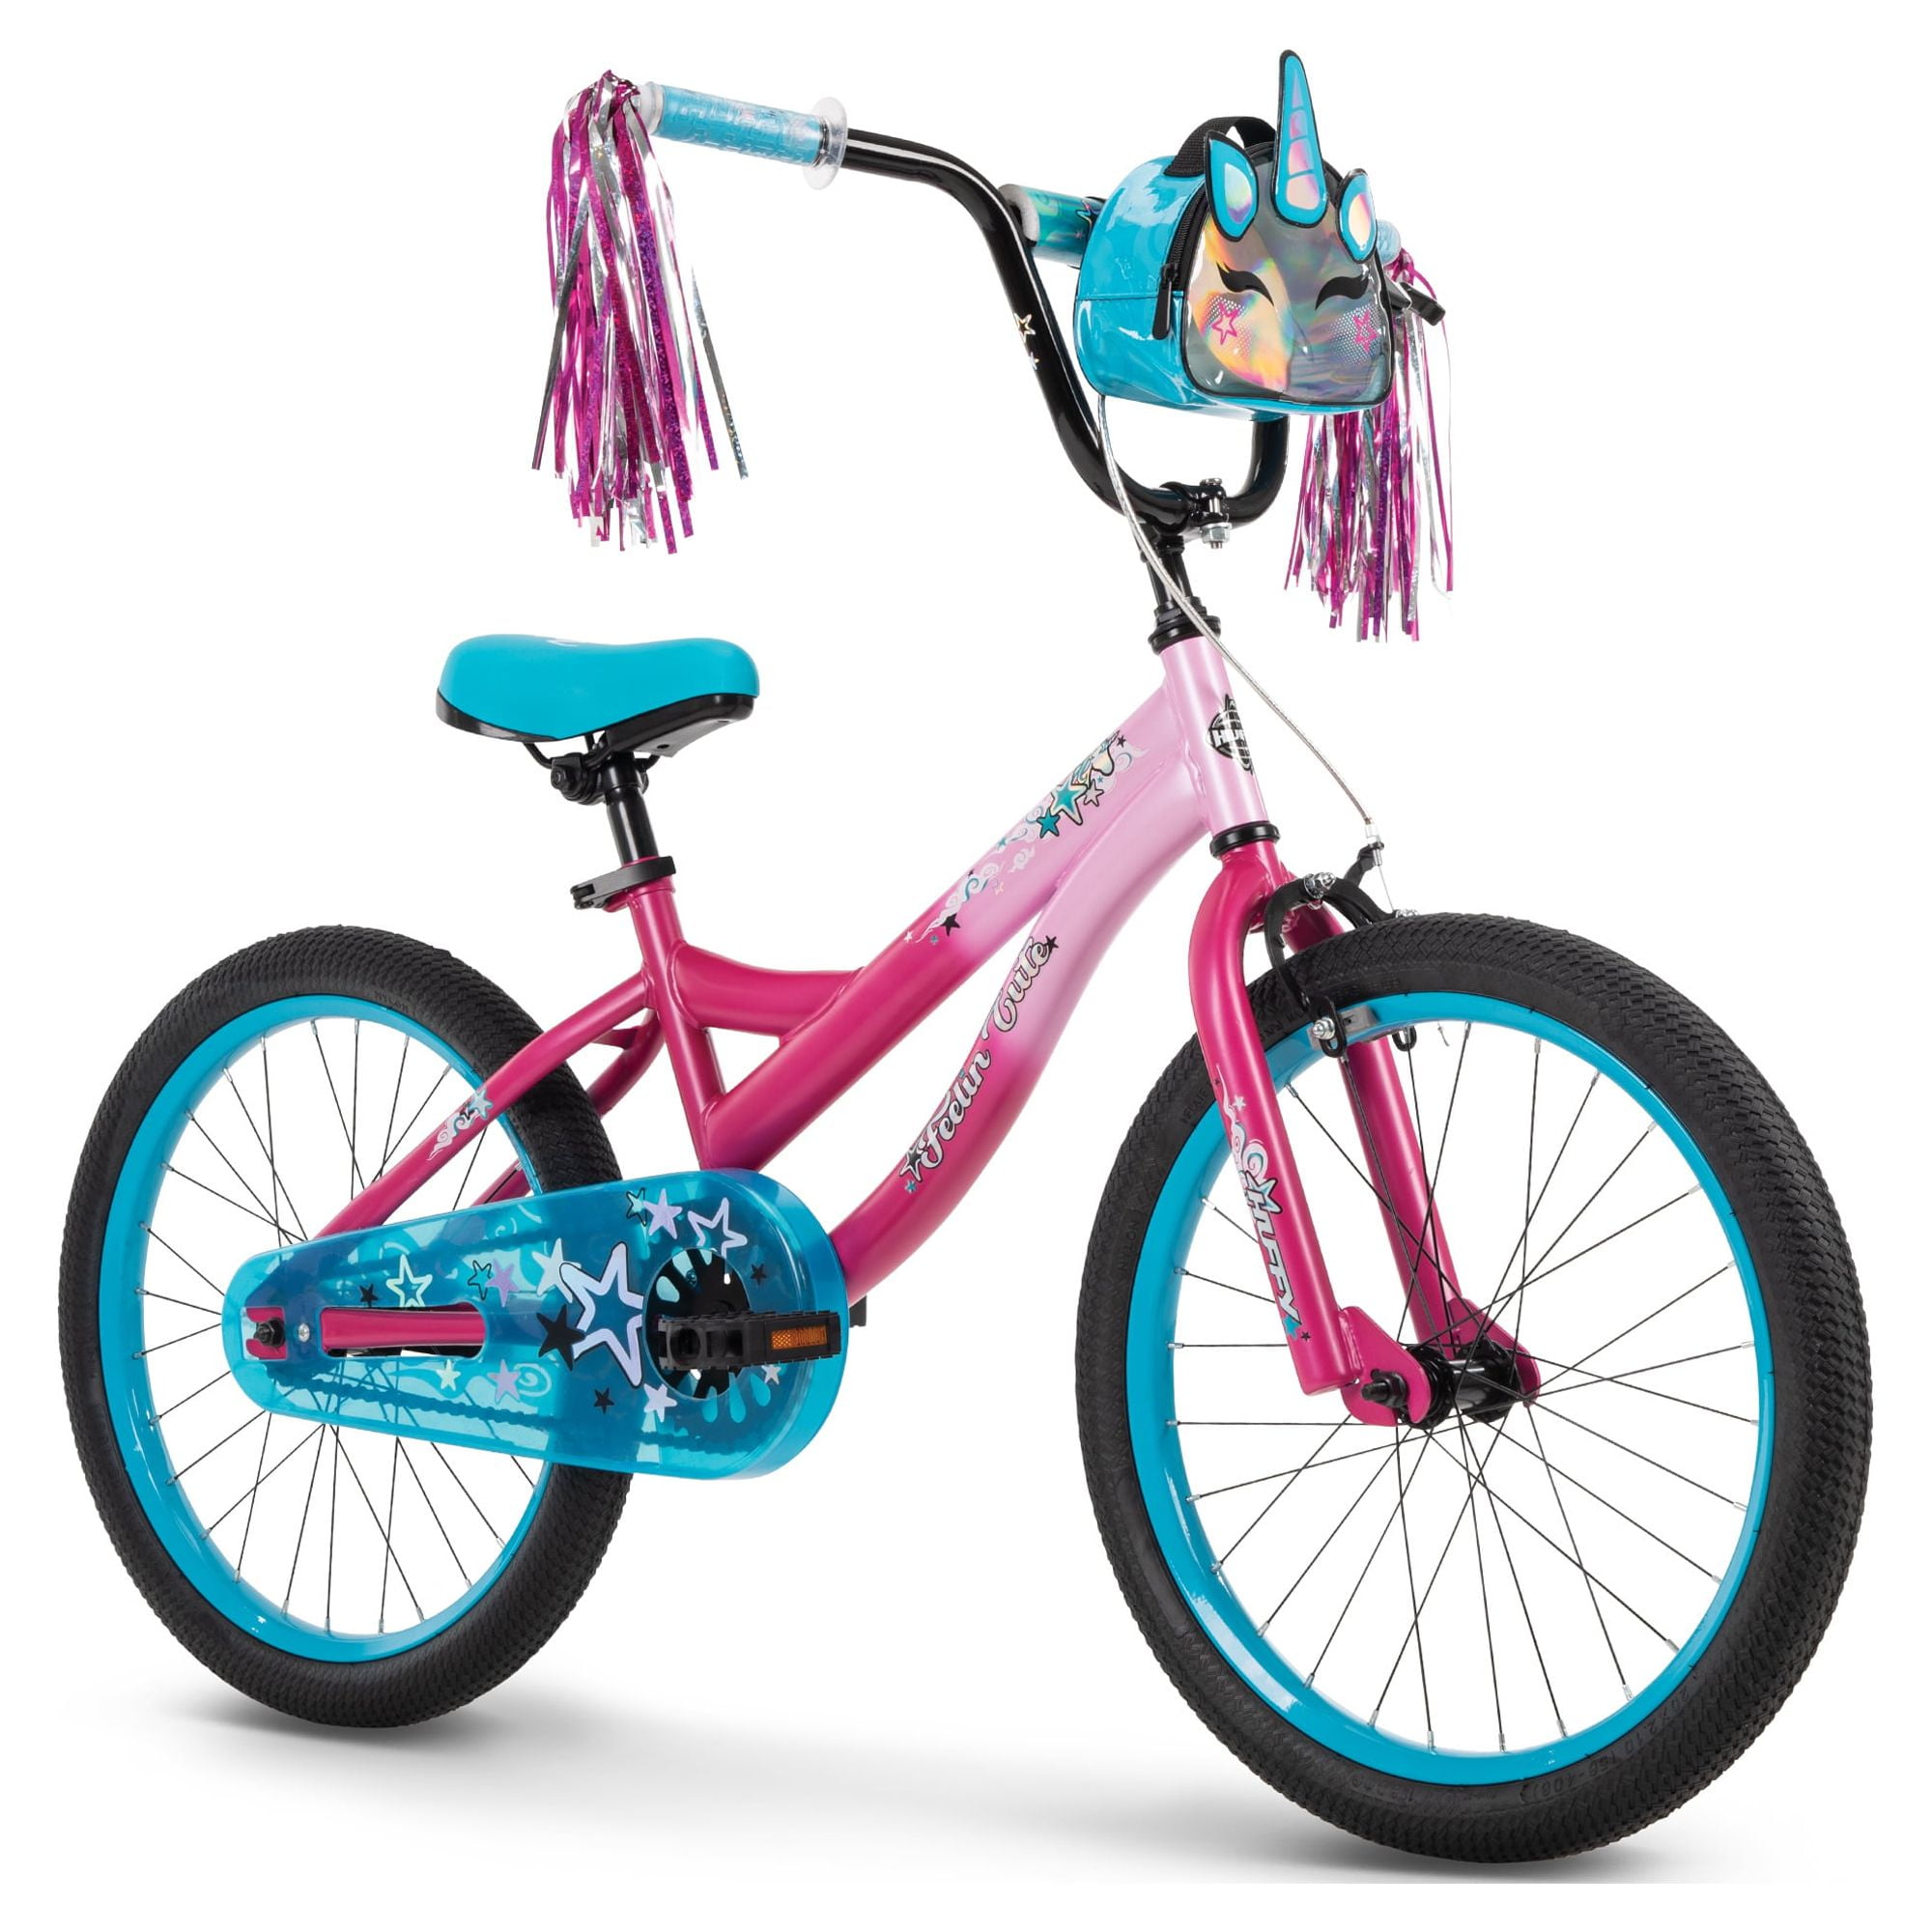 Huffy Feelin' Cute 20-inch Girls' Bike, Pink